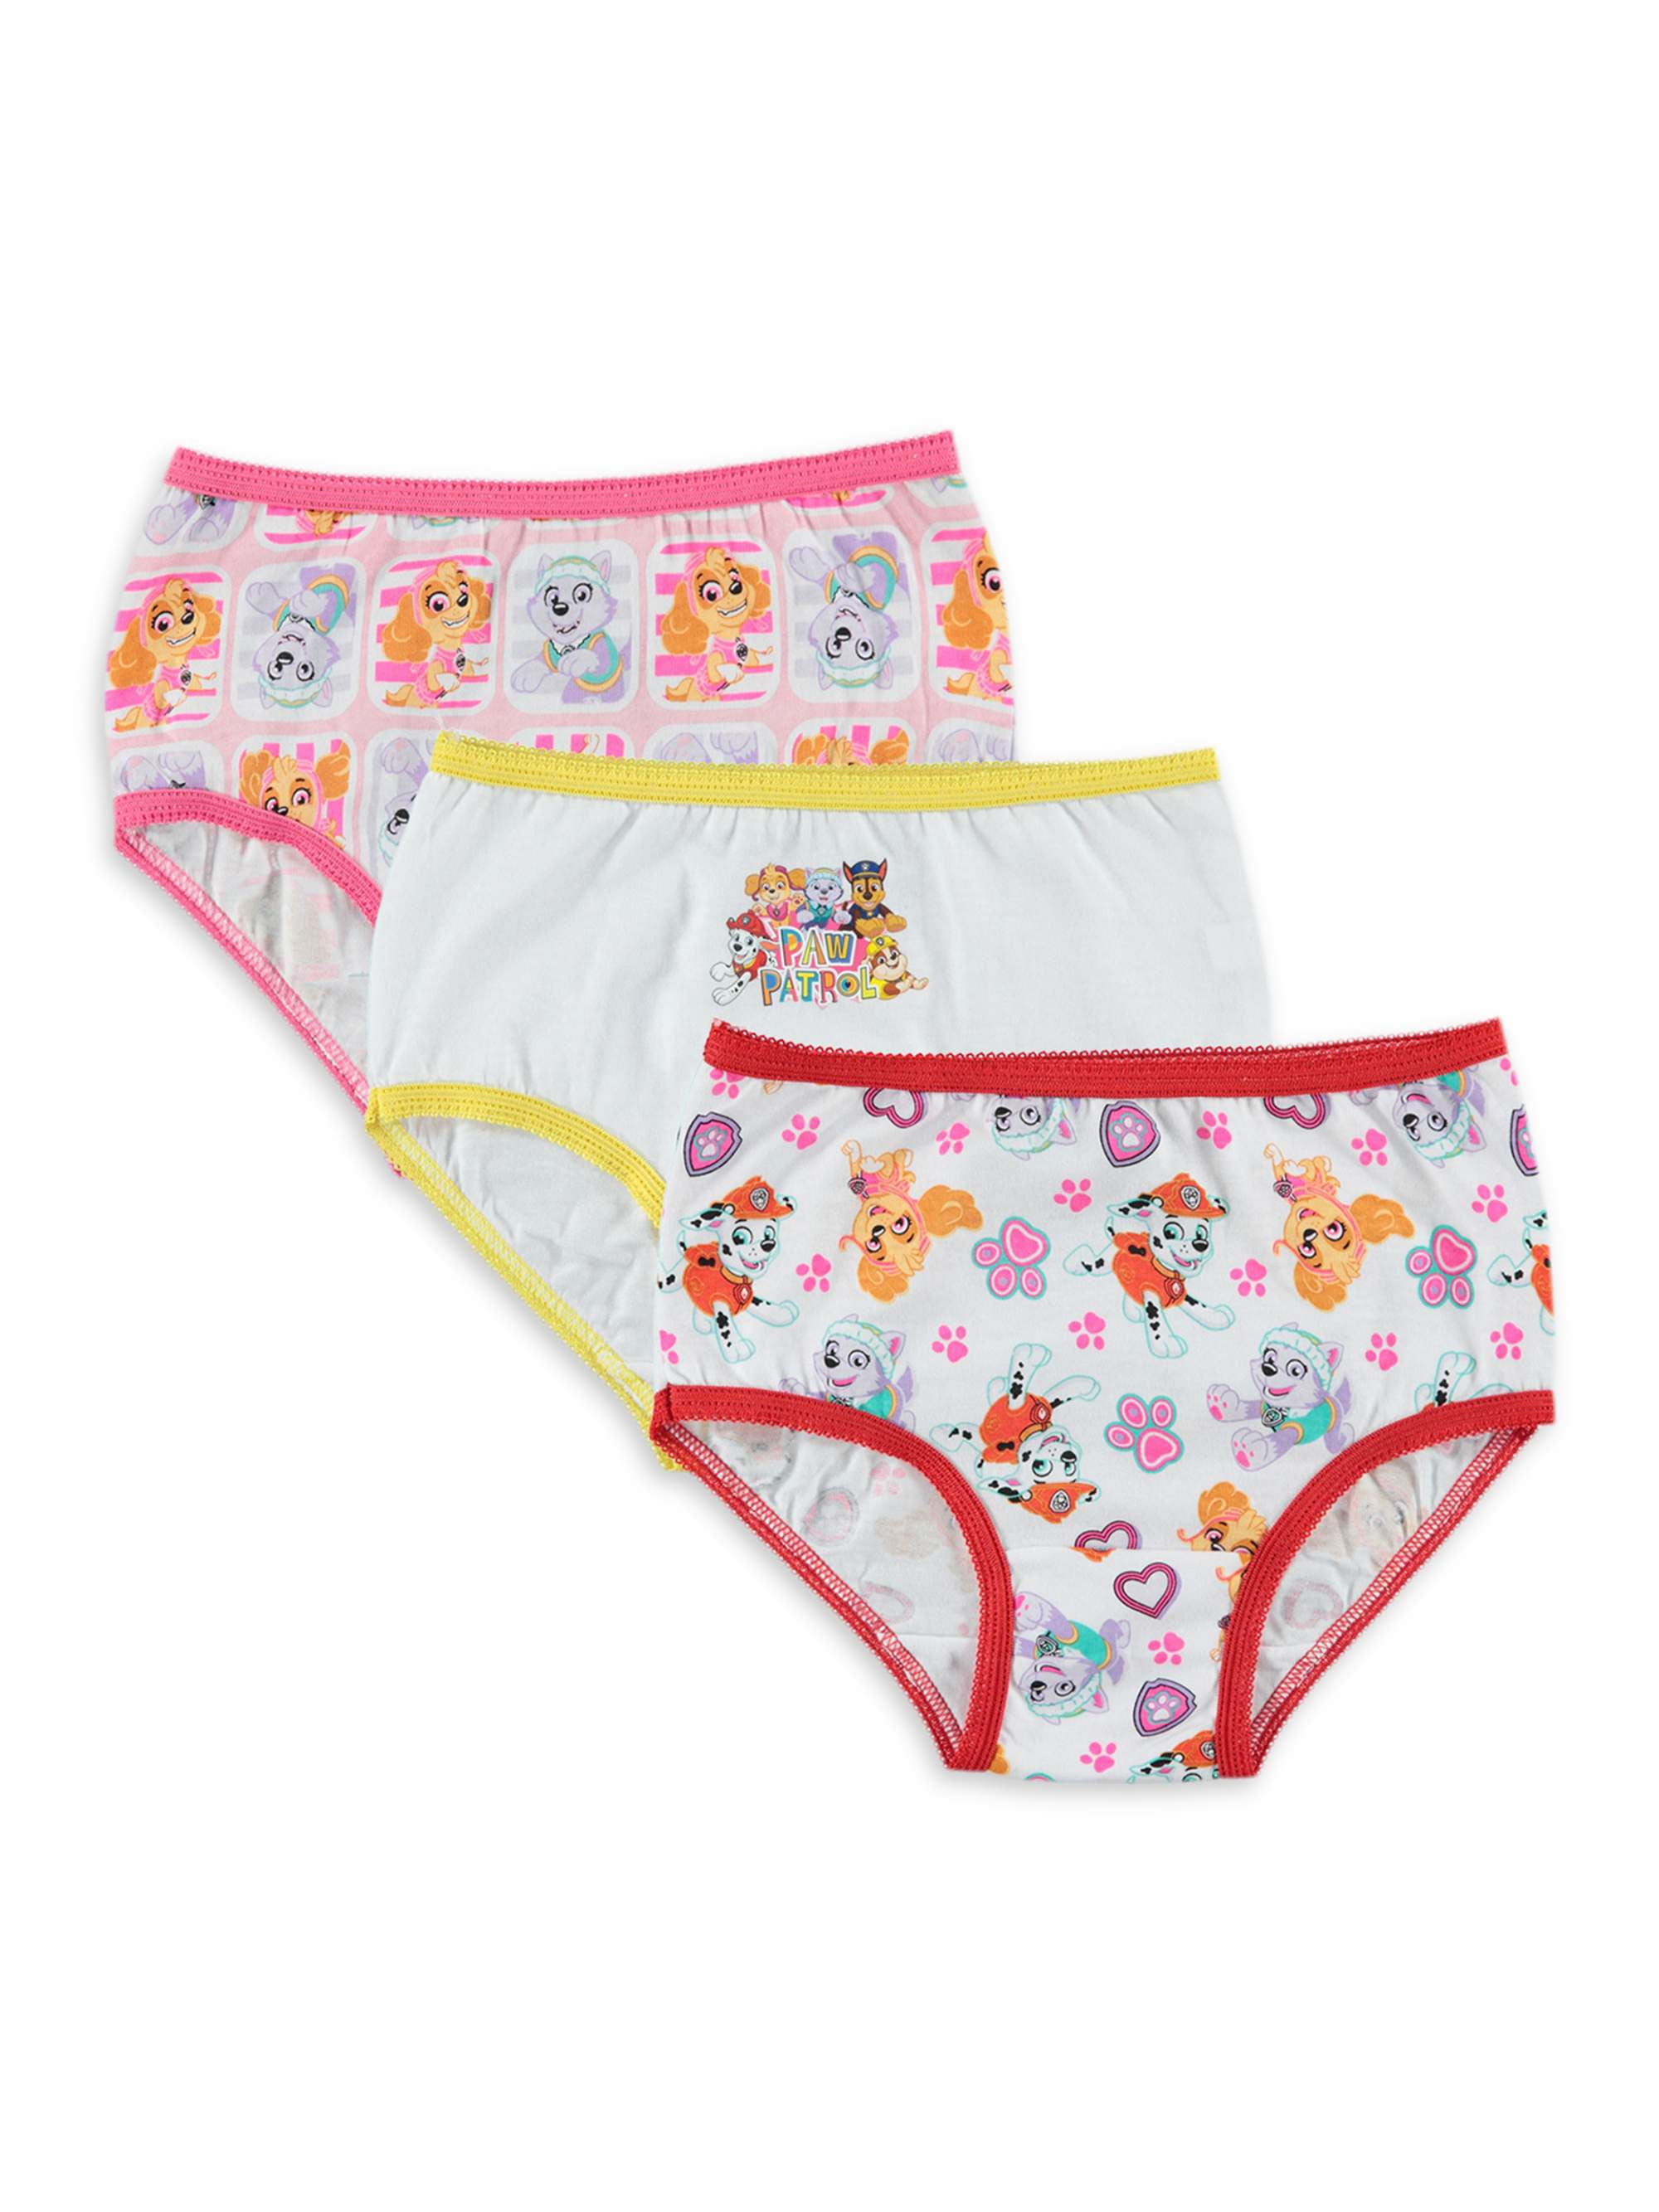 Paw Patrol Girls Underwear 7 Pack Briefs, Sizes 4-8 